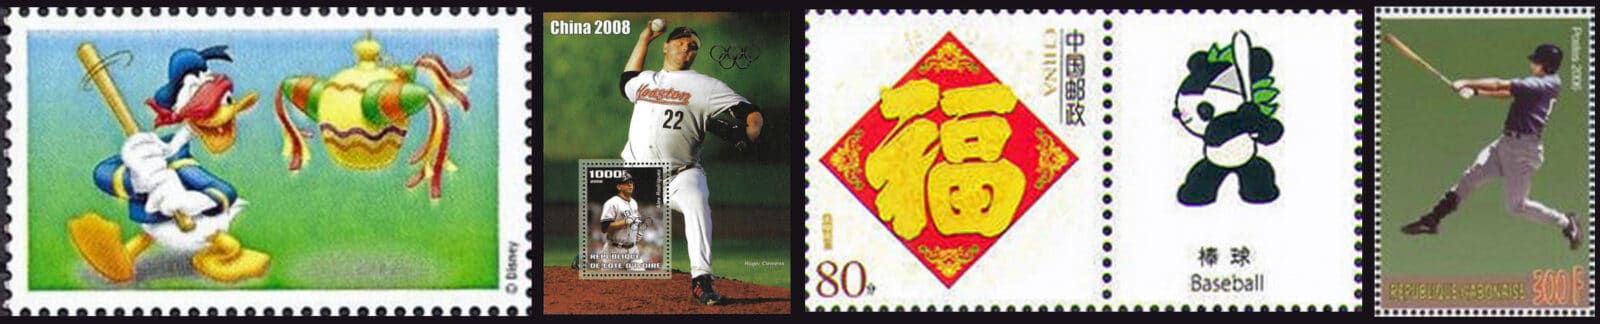 2006 Baseball Postage Stamps header